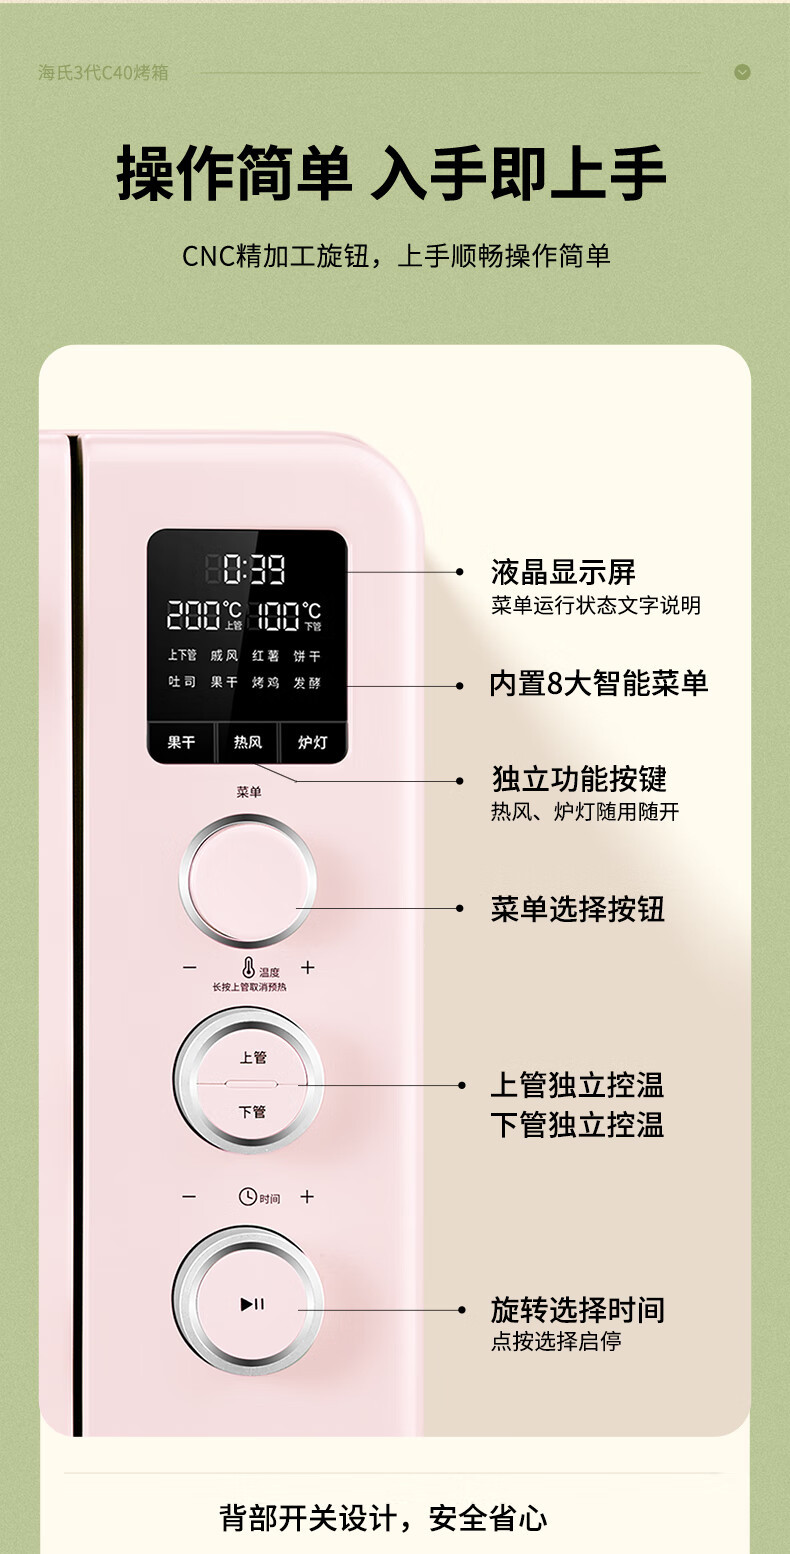 海氏/HAUSWIRT 电烤箱多功能40L搪瓷内胆独立控温C40三代烤箱